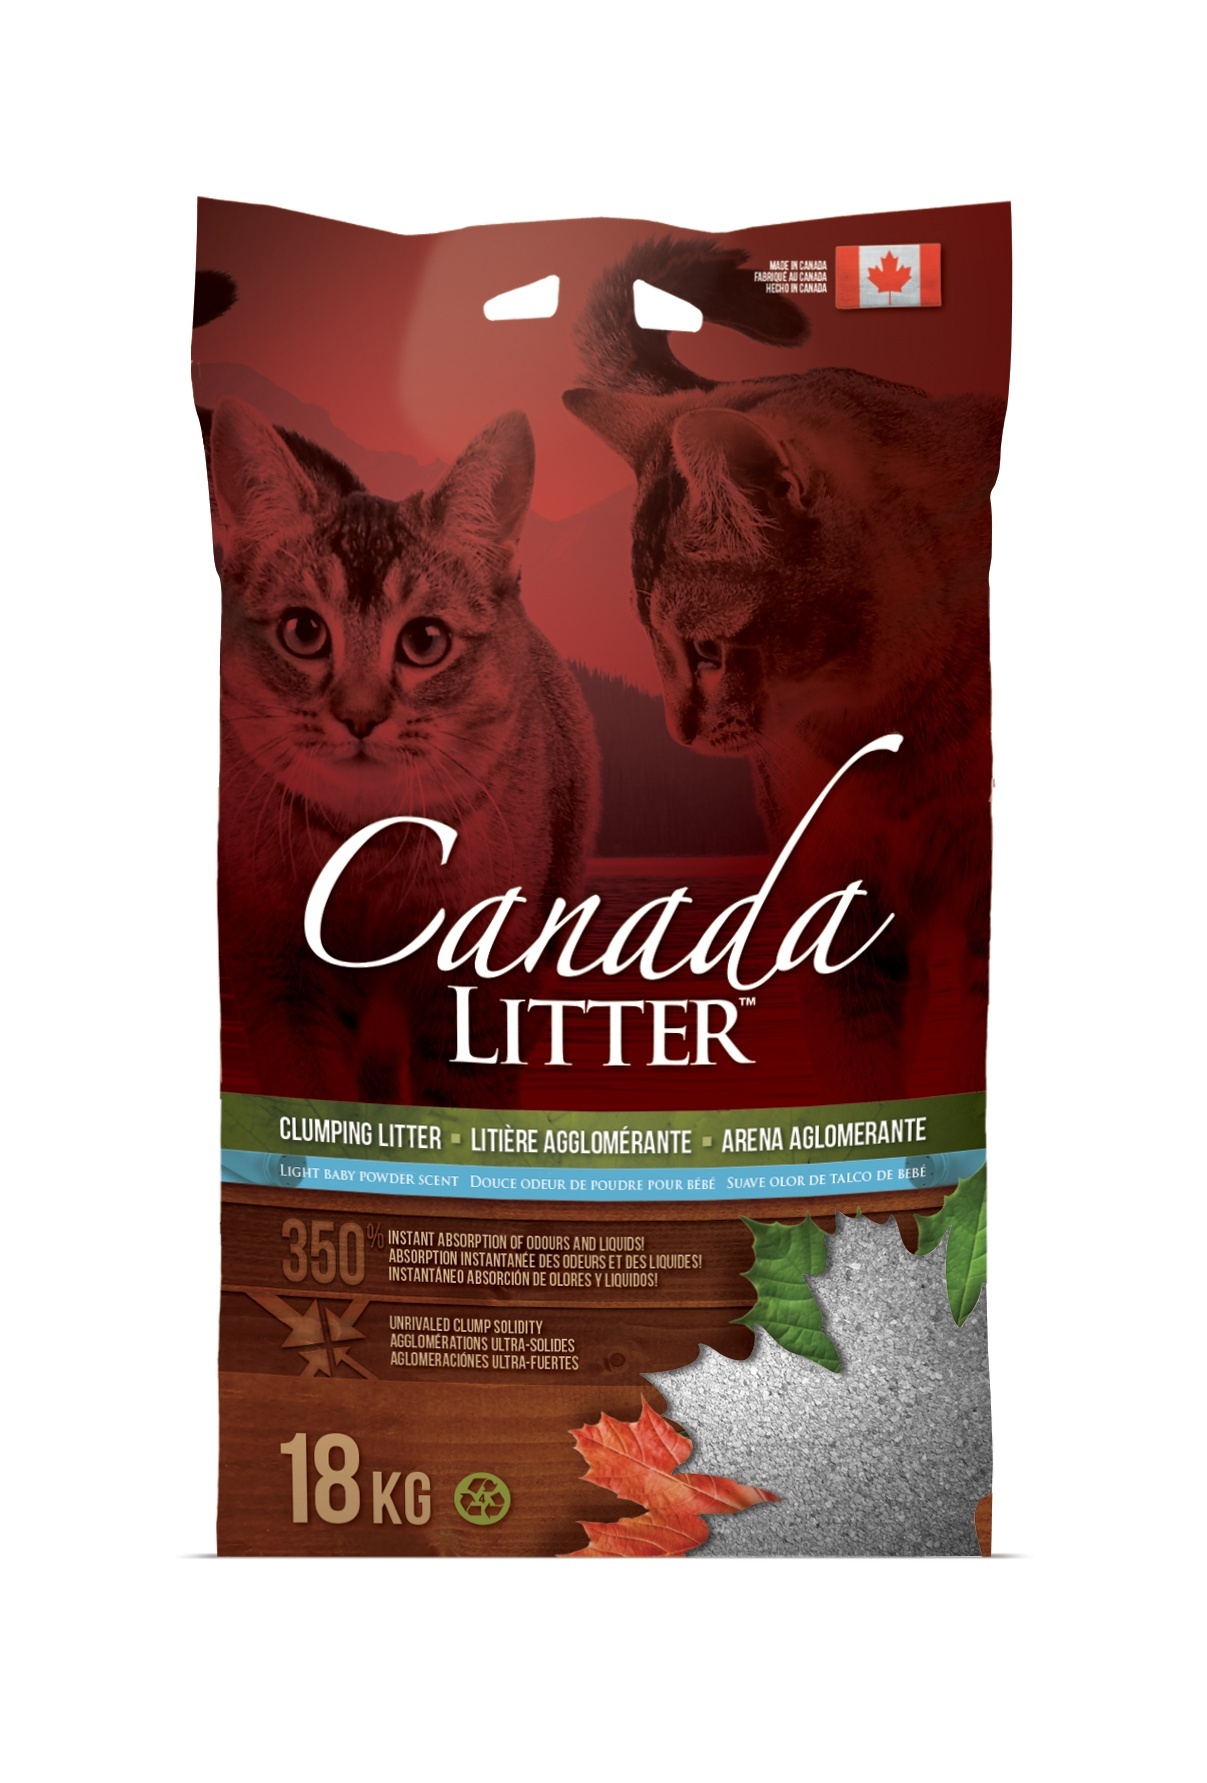 Canada Litter